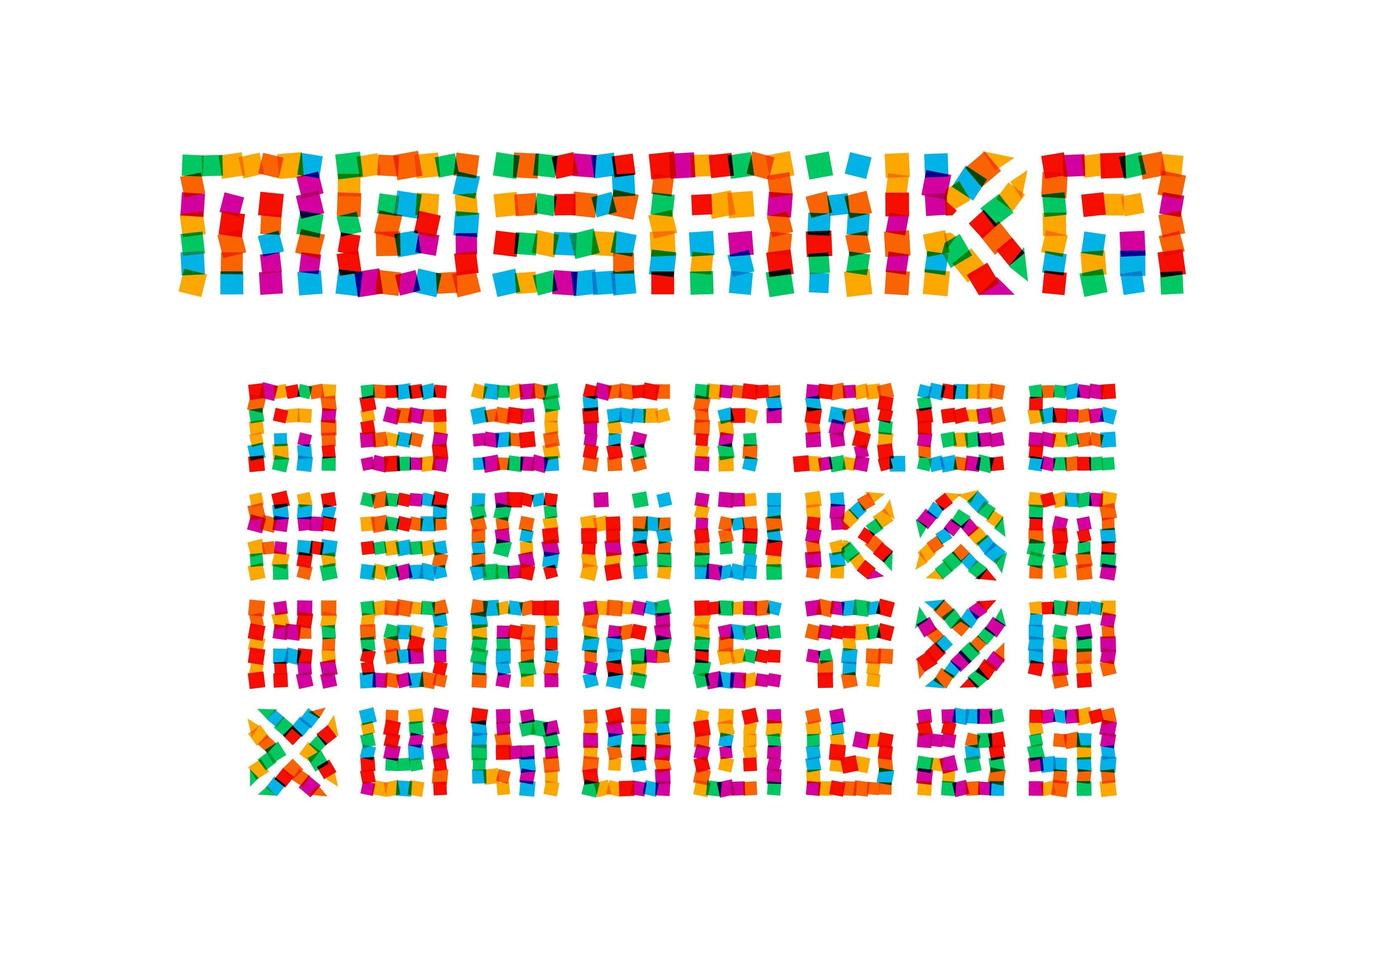 mosaik bokstäver set. färgade klistermärken stil vektor ukrainska alfabetet. teckensnitt för evenemang, kampanjer, logotyper, banner, monogram och affisch. typografi design.